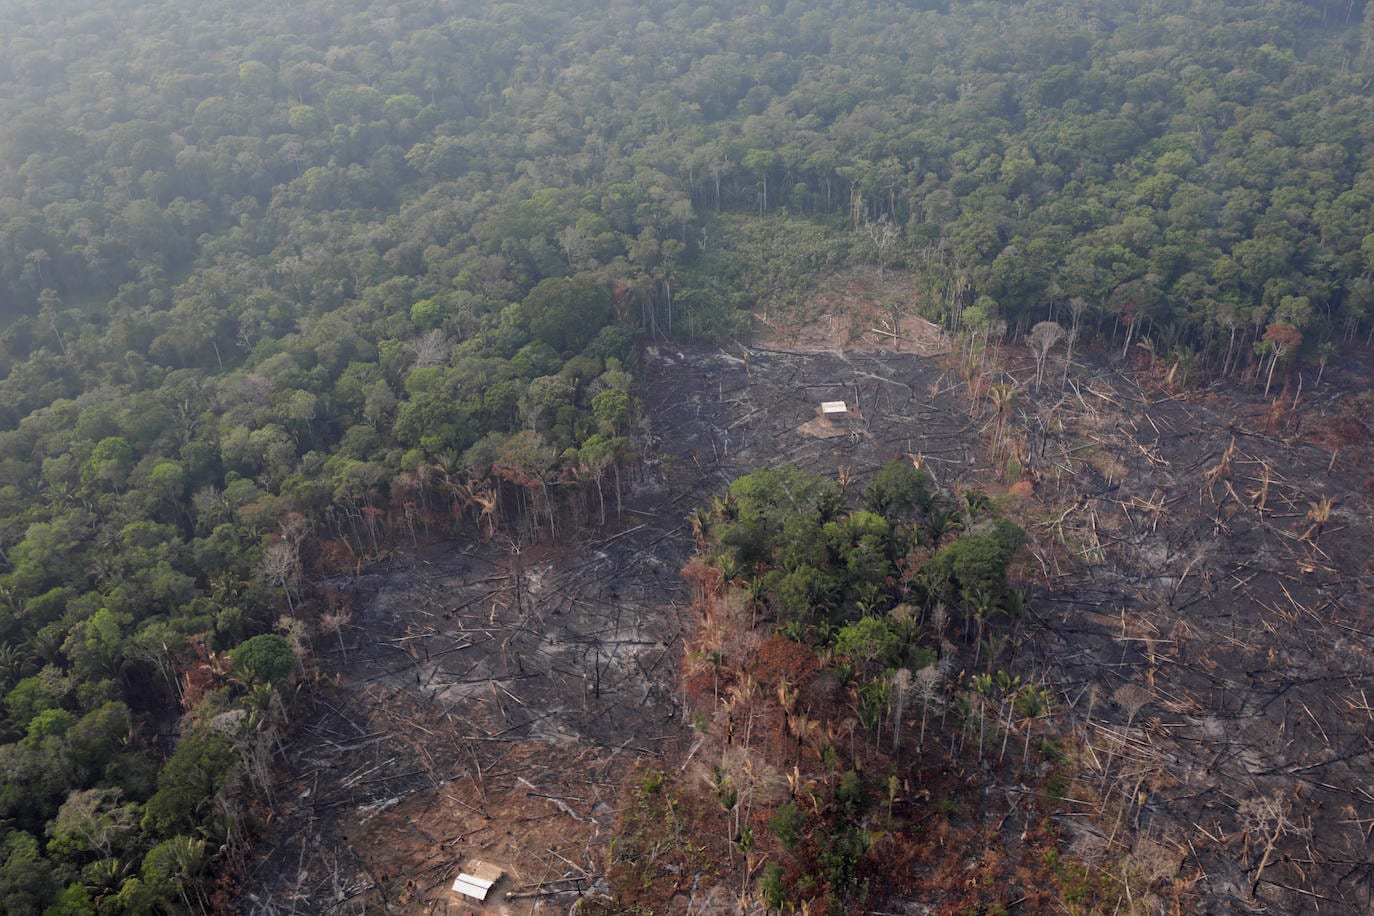 Imagen del incendio en la Amazonia captado por la Nasa.